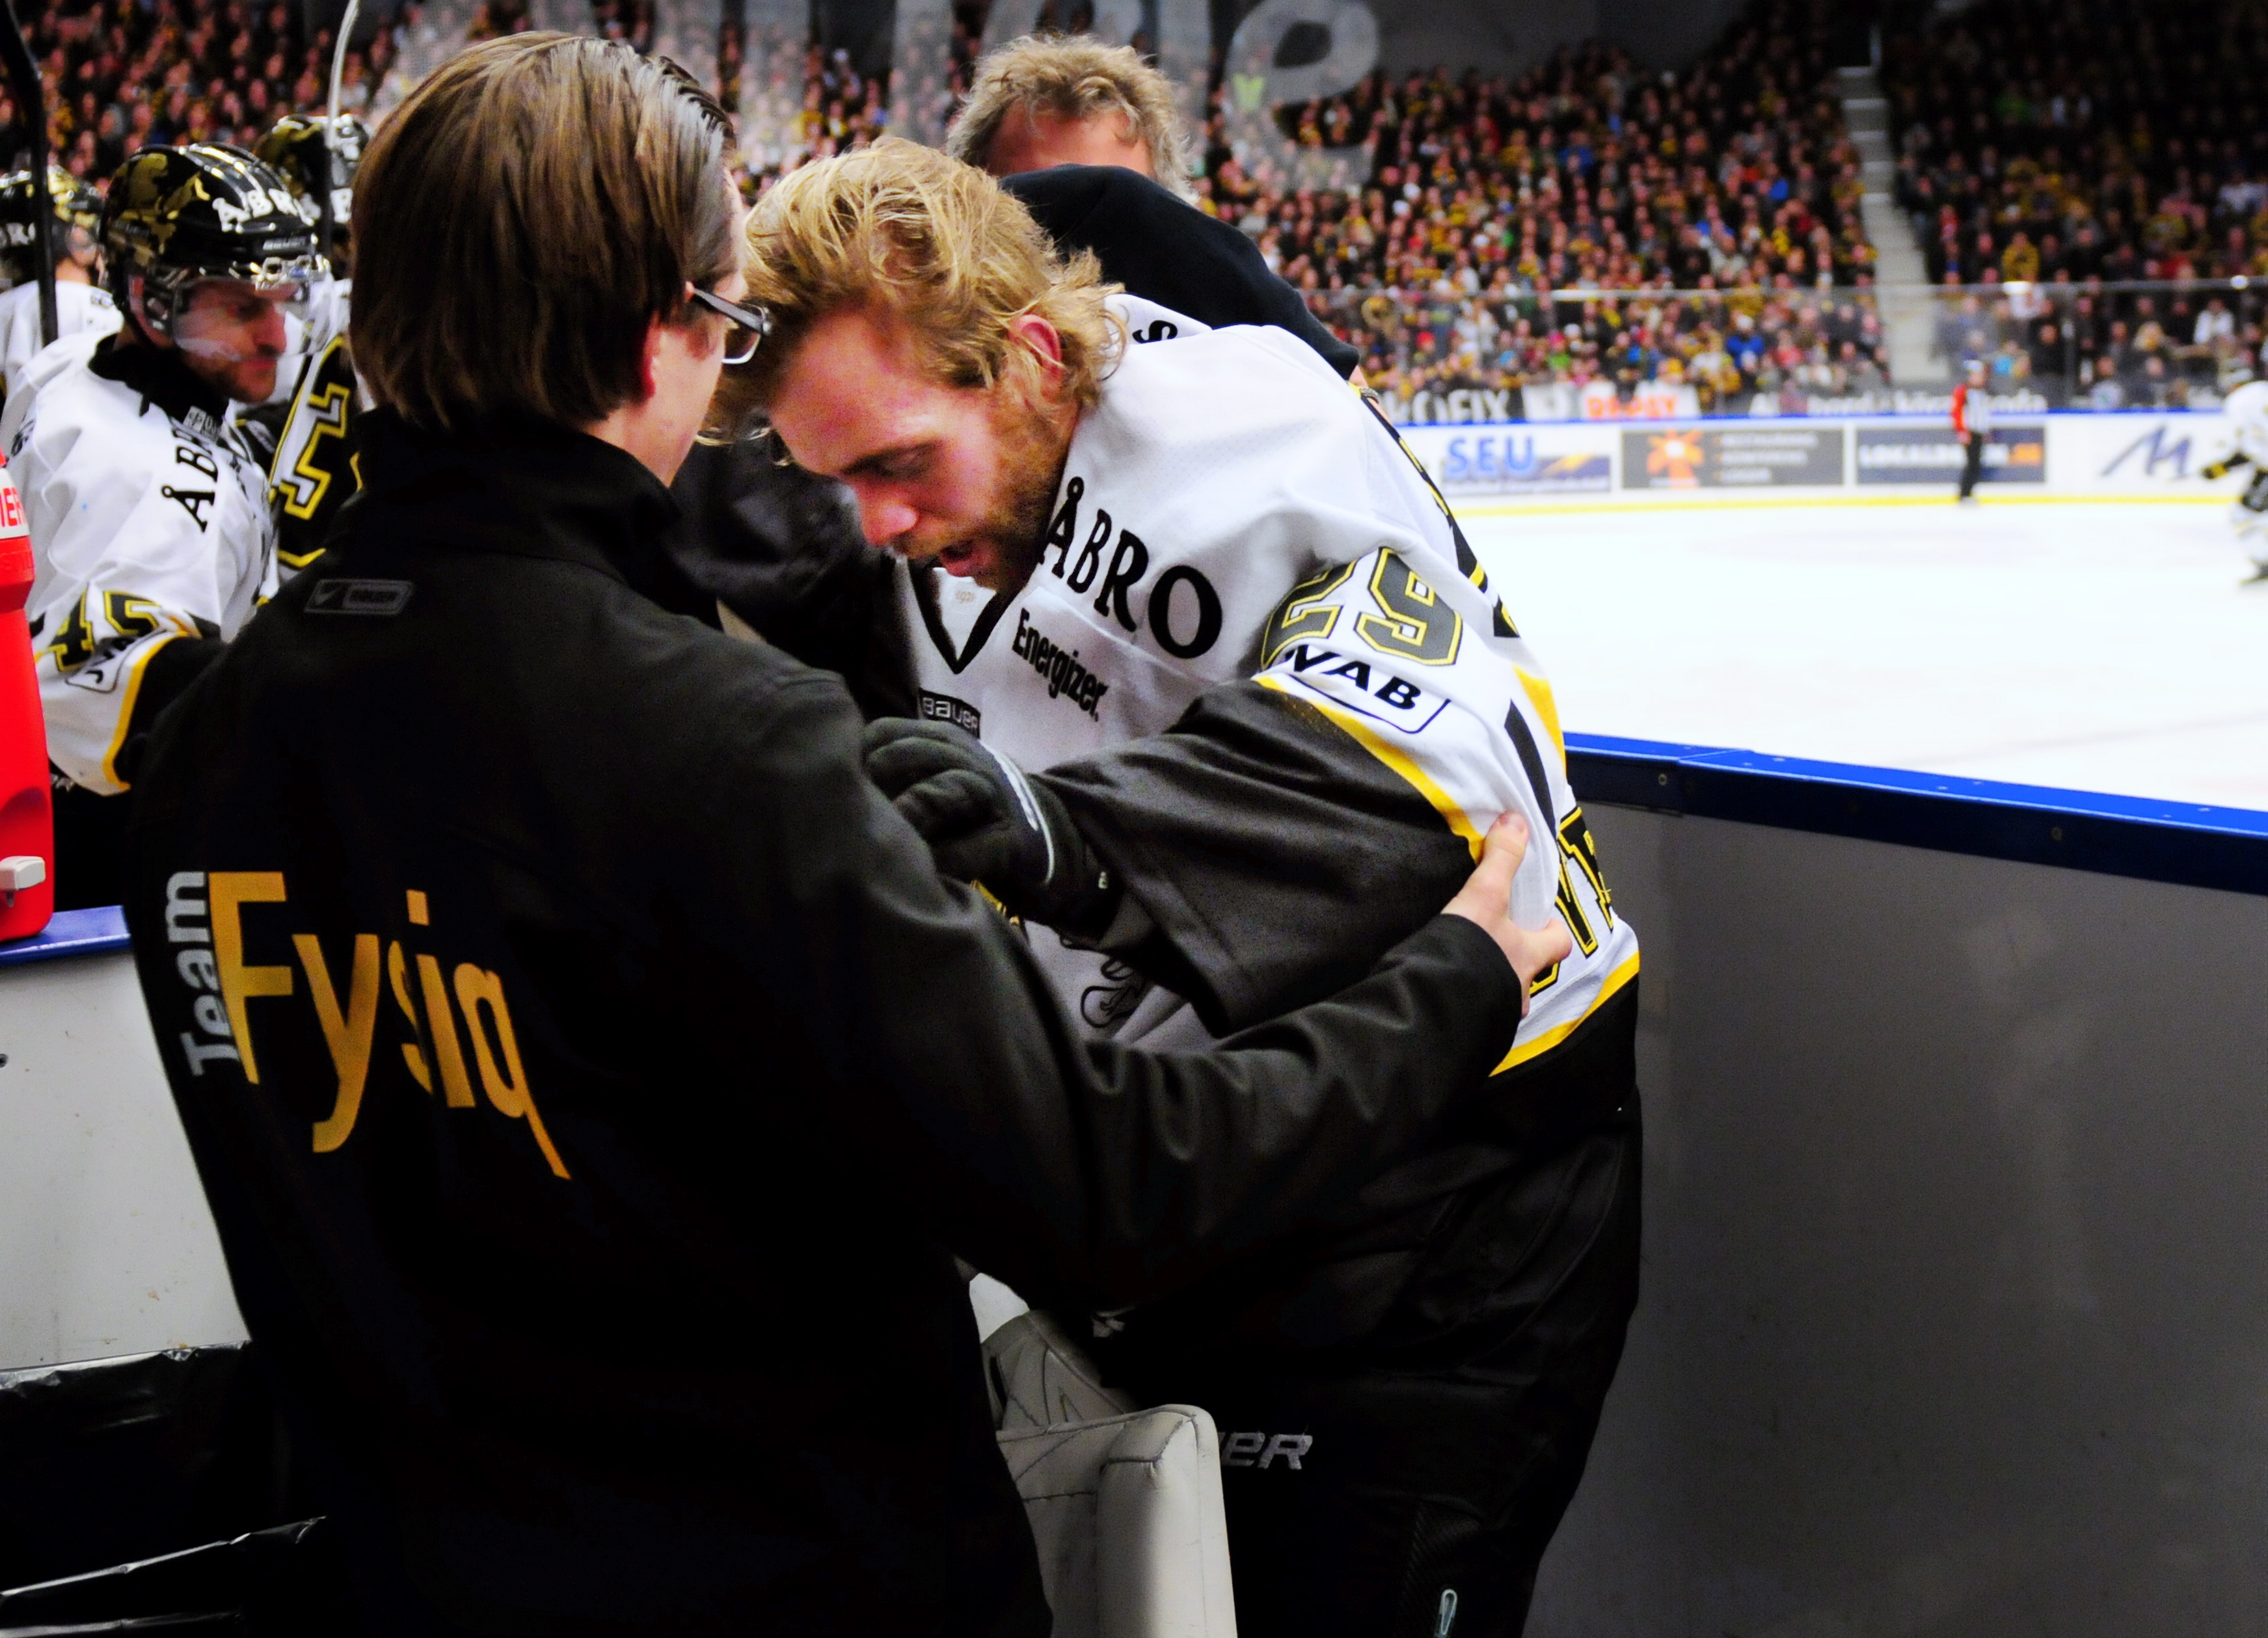 AIK:s reservmålvakt råkade ut för en bisarr skada. Han stod i båset och träffades av en klubba från isen.